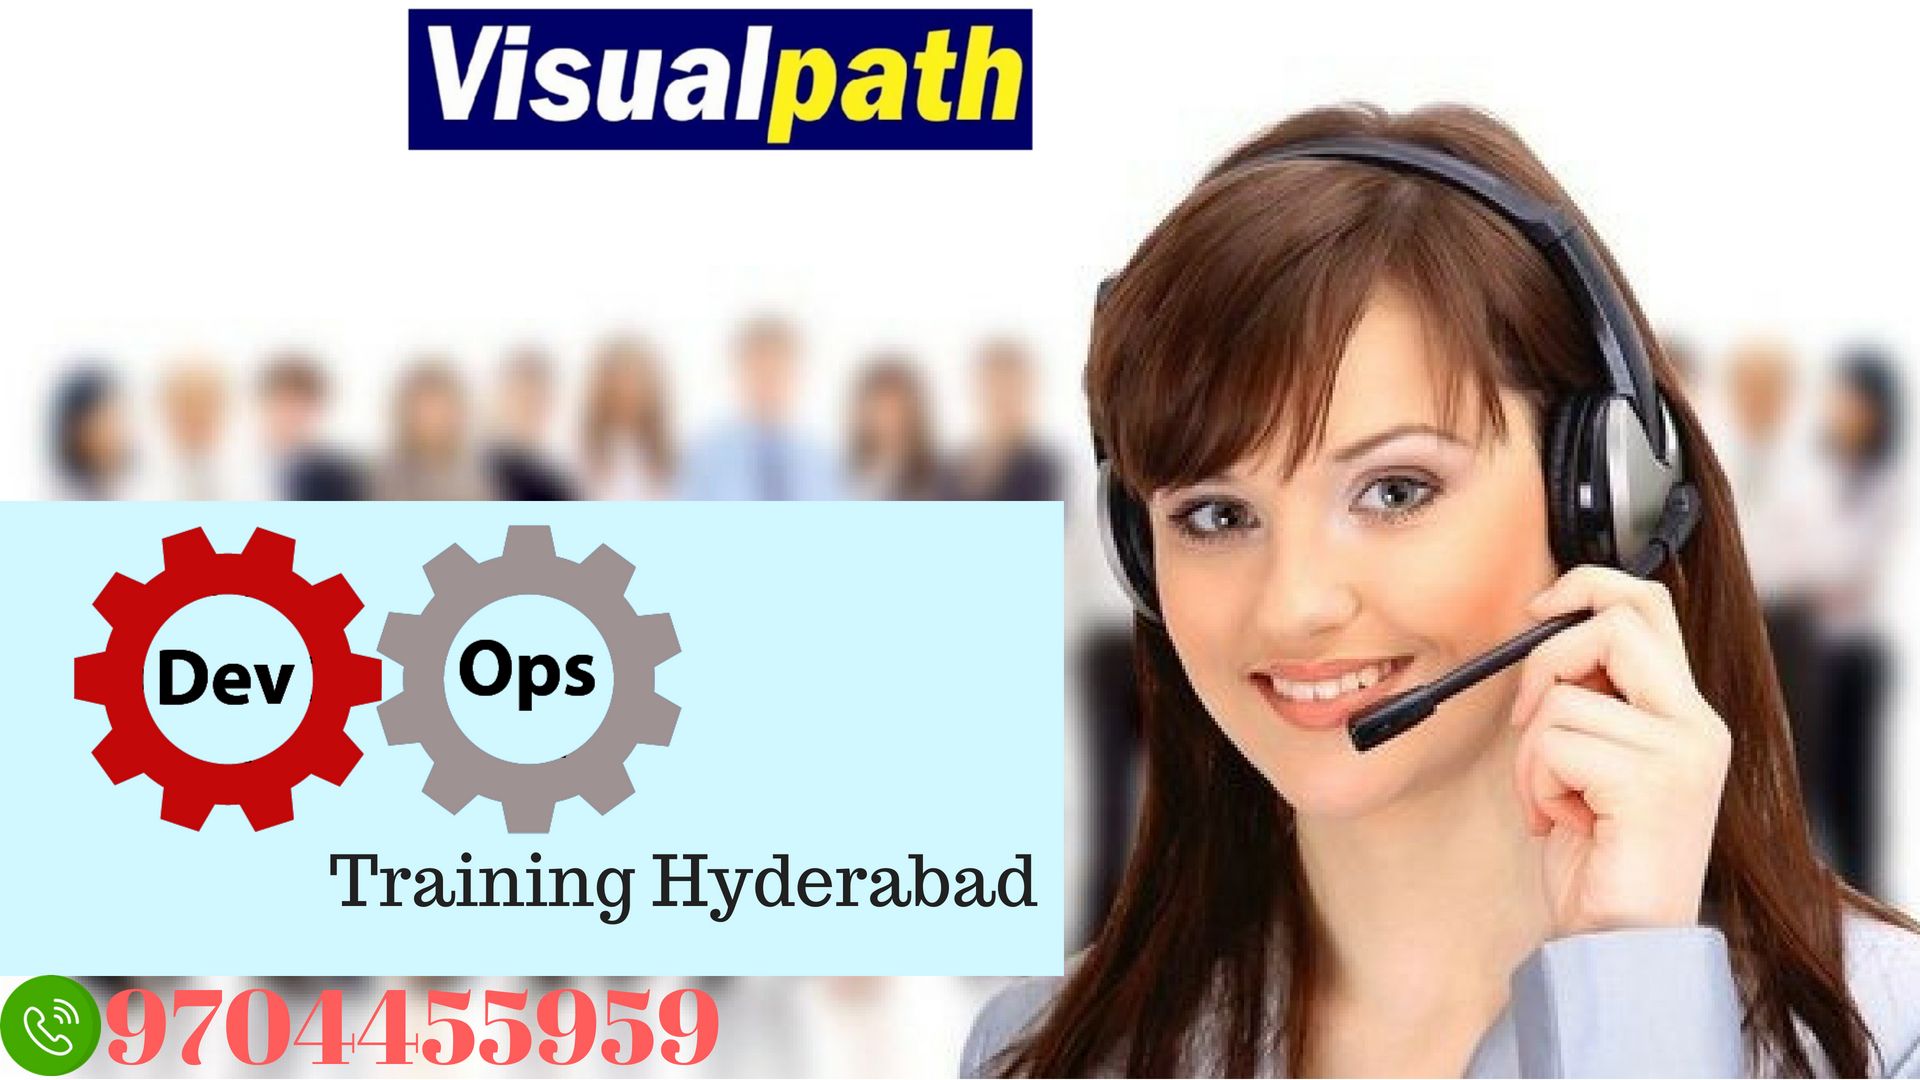 DevOps Online Training | DevOps Online Training in Hyderabad